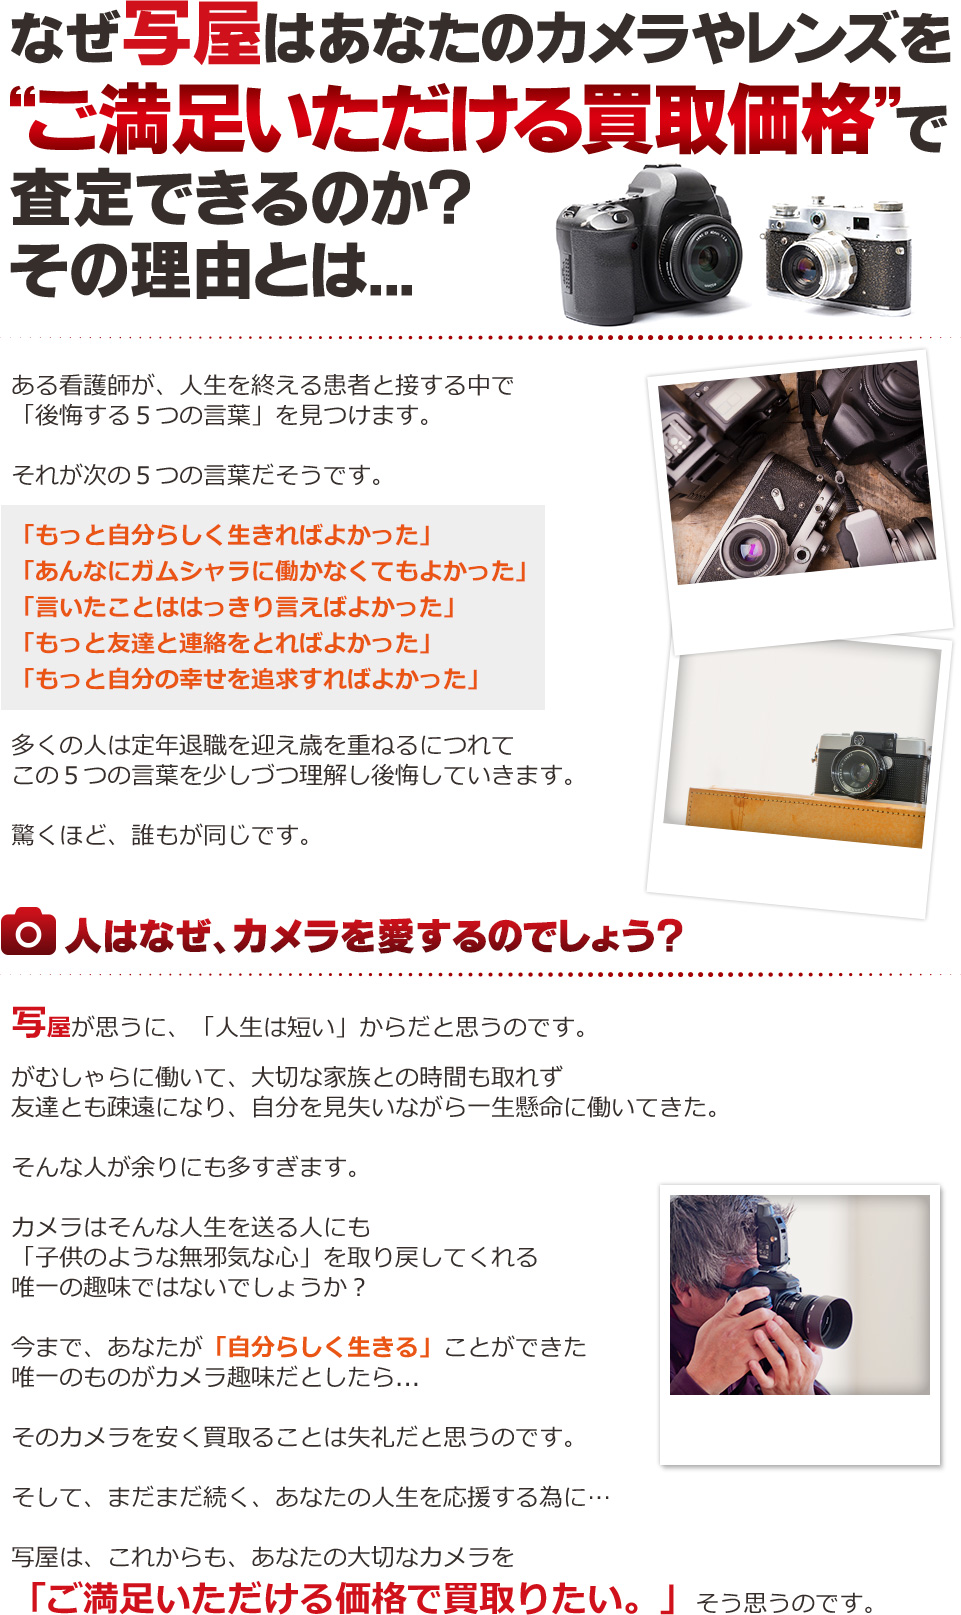 なぜ写屋はあなたのカメラやレンズを日本一の買取り価格で査定できるのか？